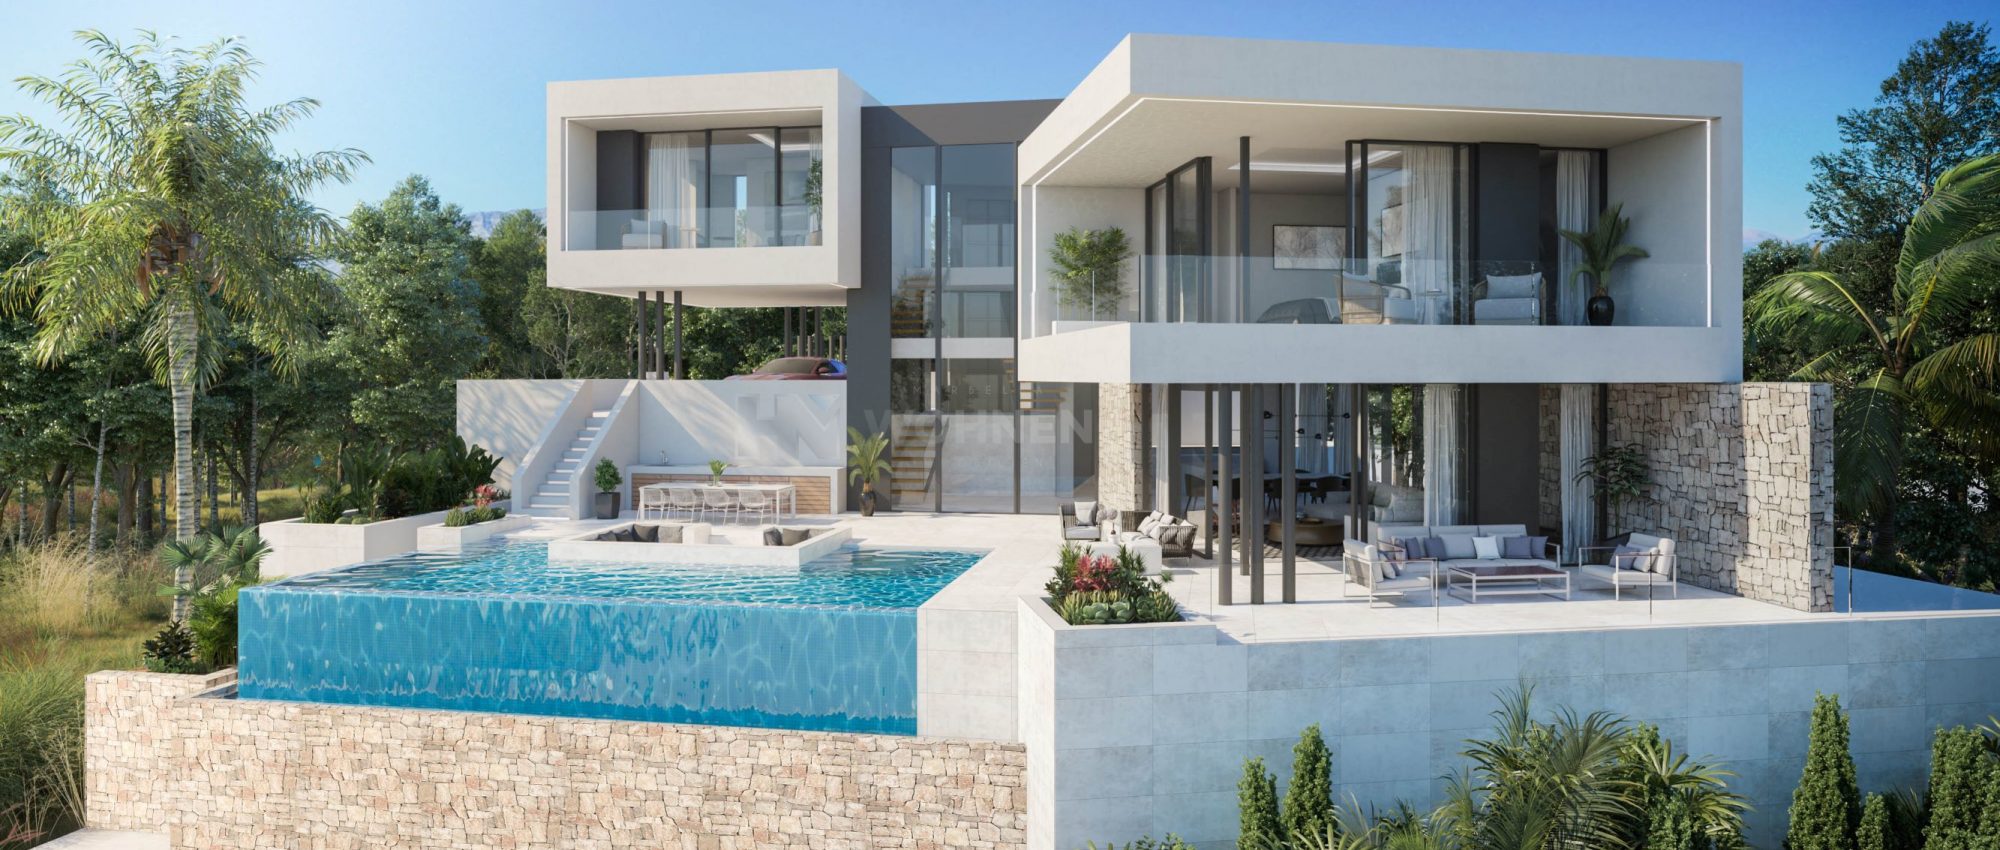 Wunderschöne moderne Villa in Südausrichtung mit Infinity-Pool – La Cala Golf Resort